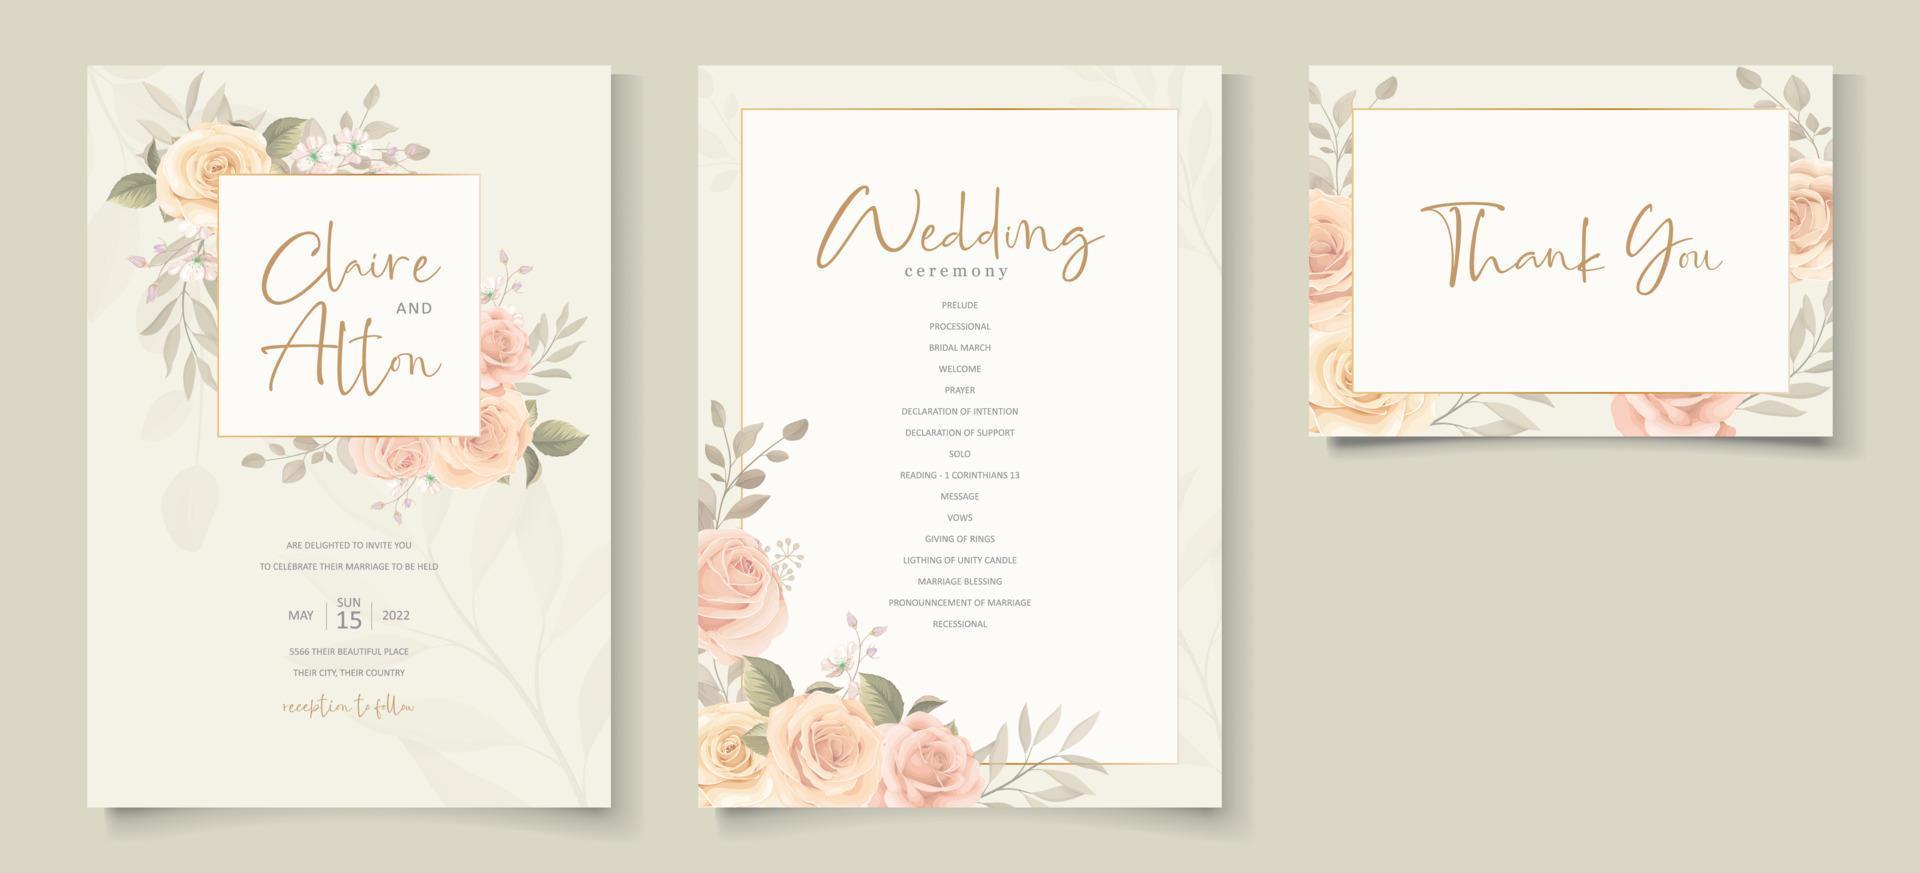 elegante plantilla de invitación de boda con tema floral de color melocotón vector